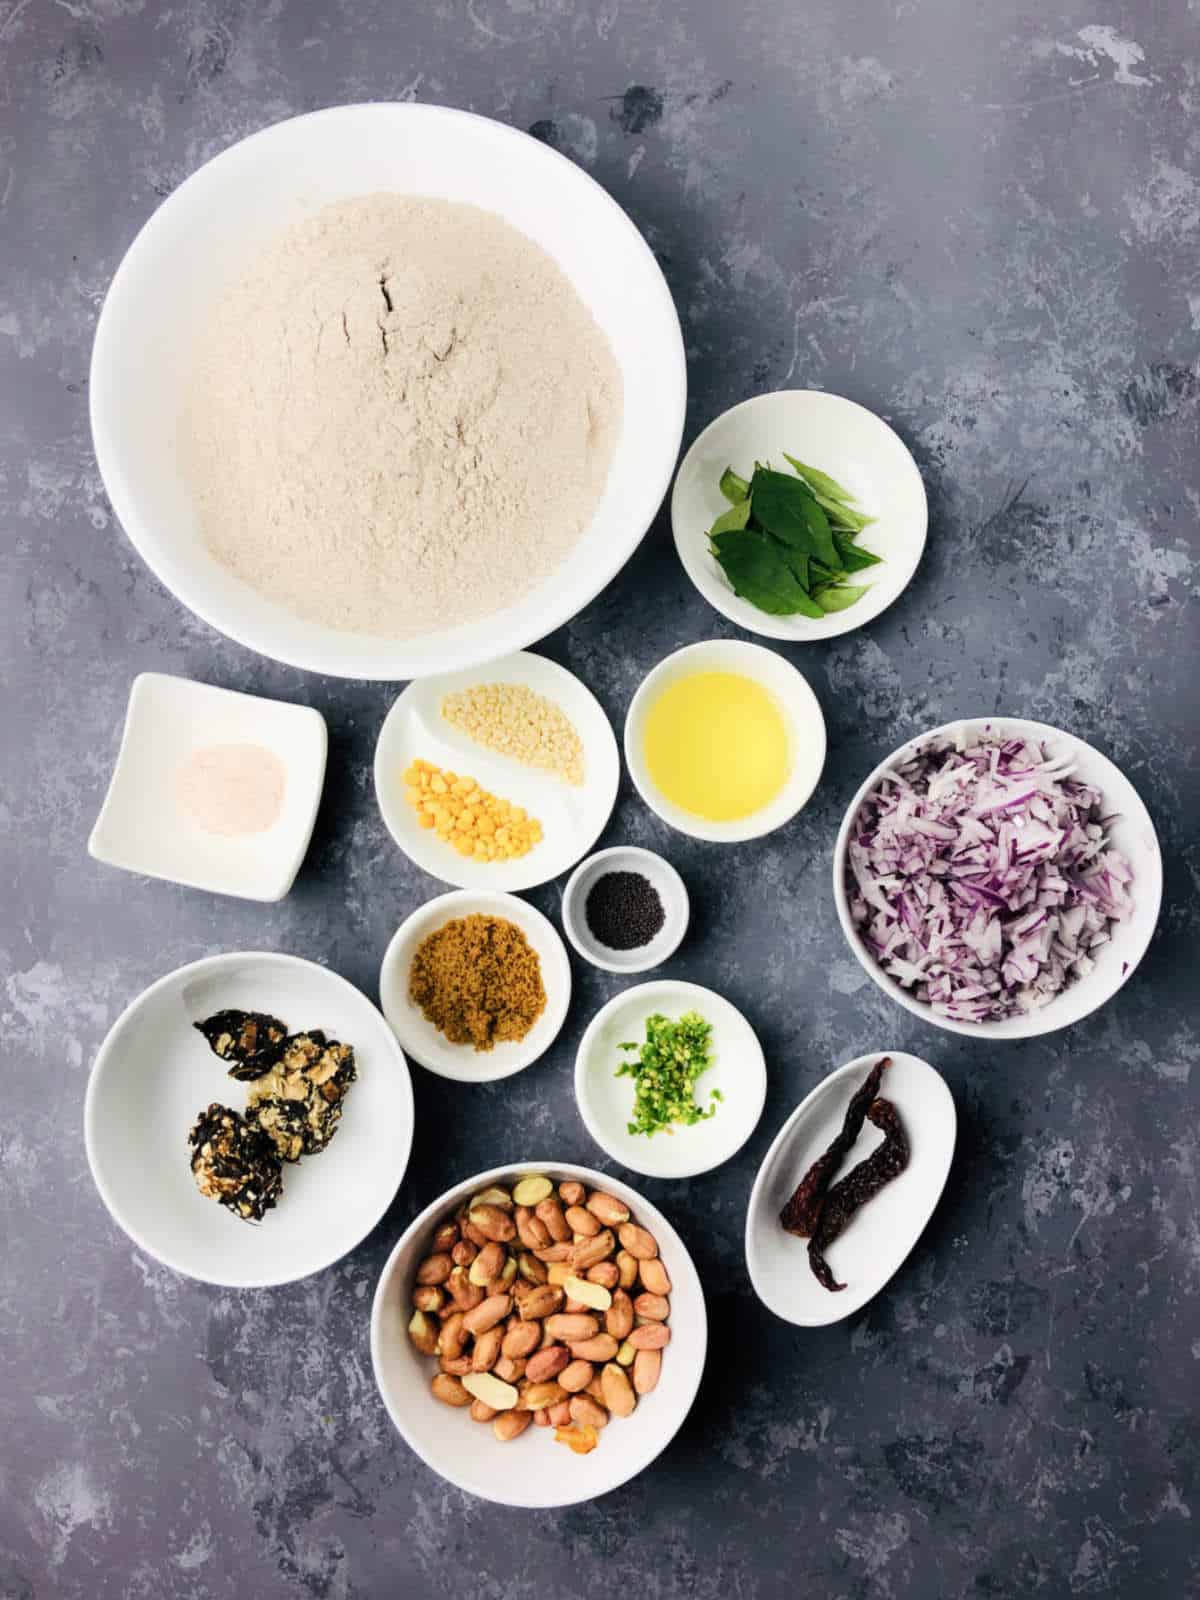 Ingredients to make ragi upma.